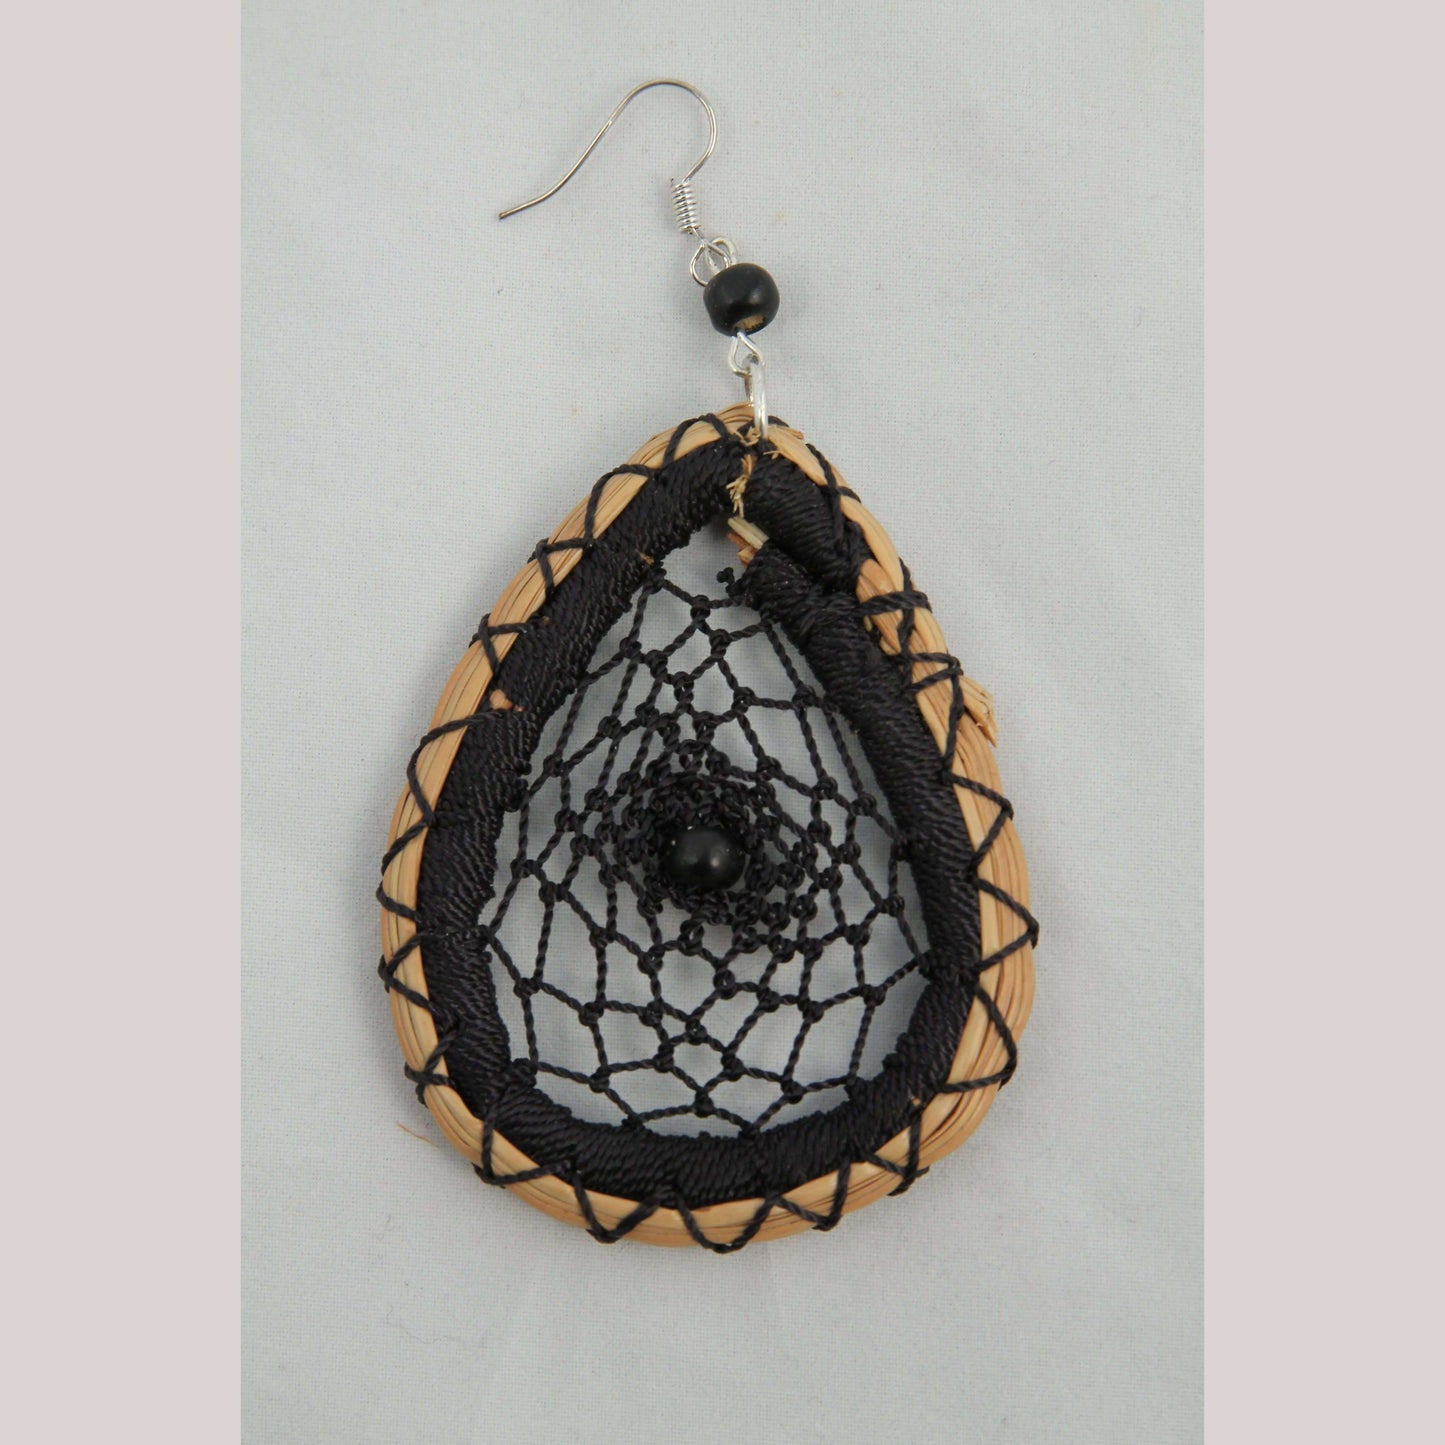 Earrings Jewelry Mexican Folk Wearable Art "Dream Catcher" Oval Blk